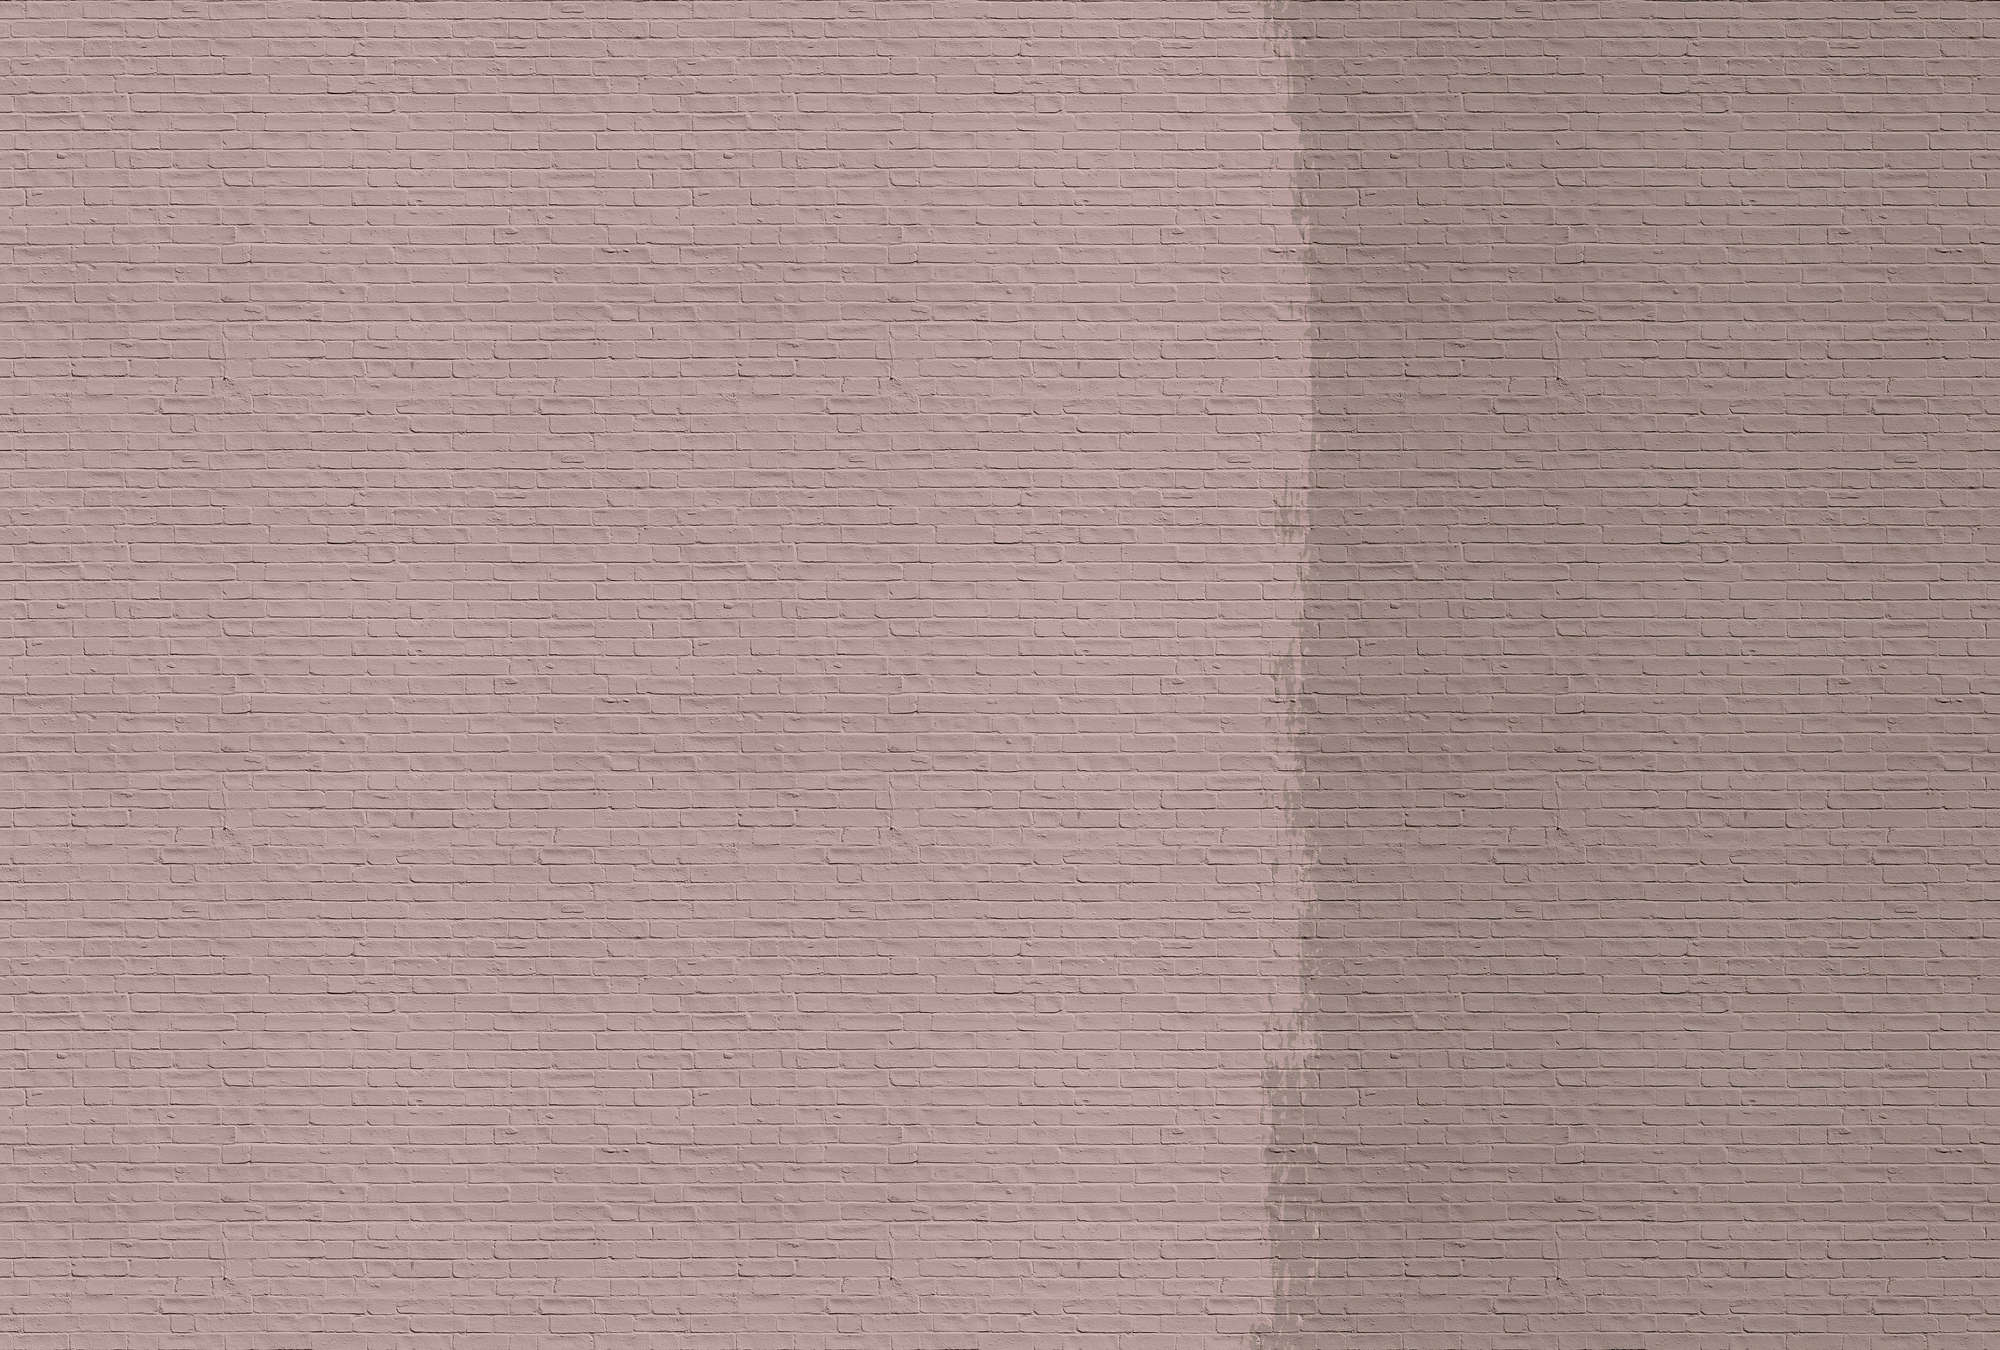             Tainted love 2 - Papier peint avec mur de briques peintes - rose, taupe | intissé lisse nacré
        